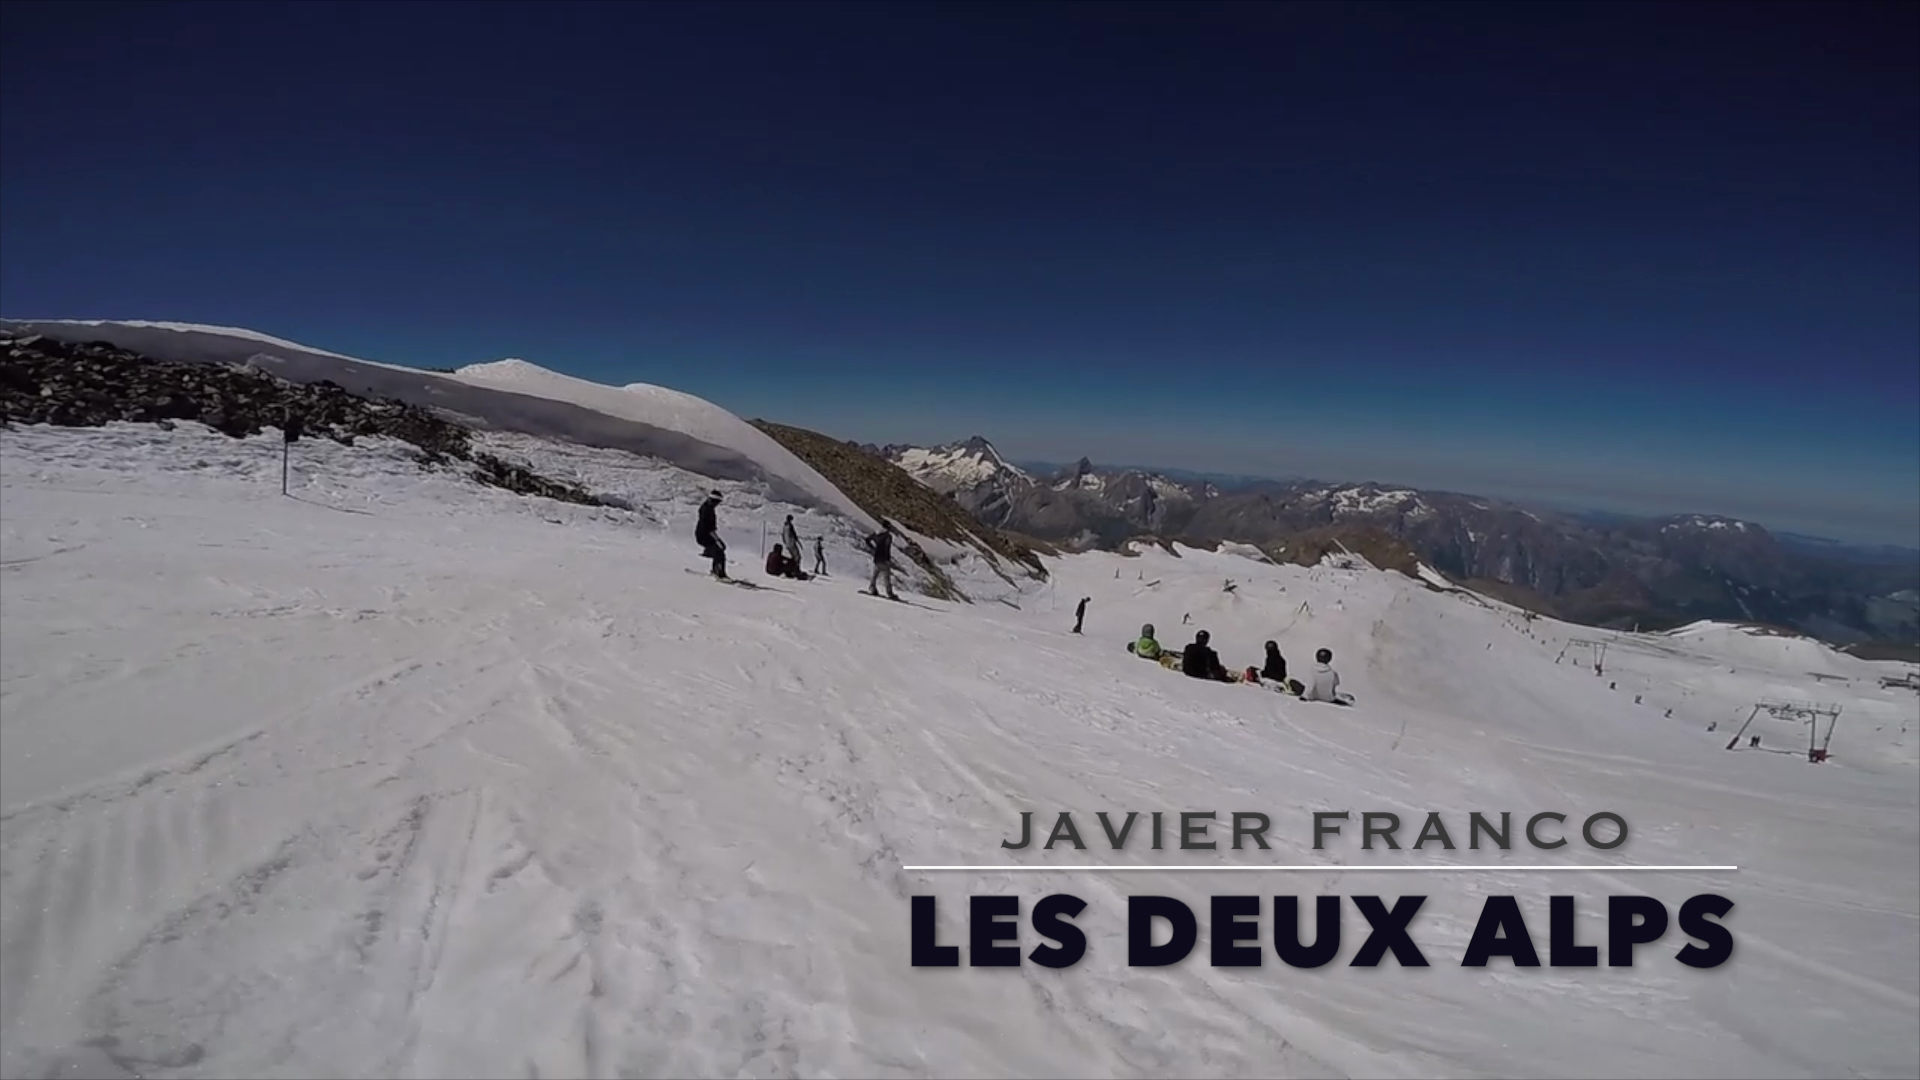 Viaje de Javier Franco a Les Deux Alps, verano 2016